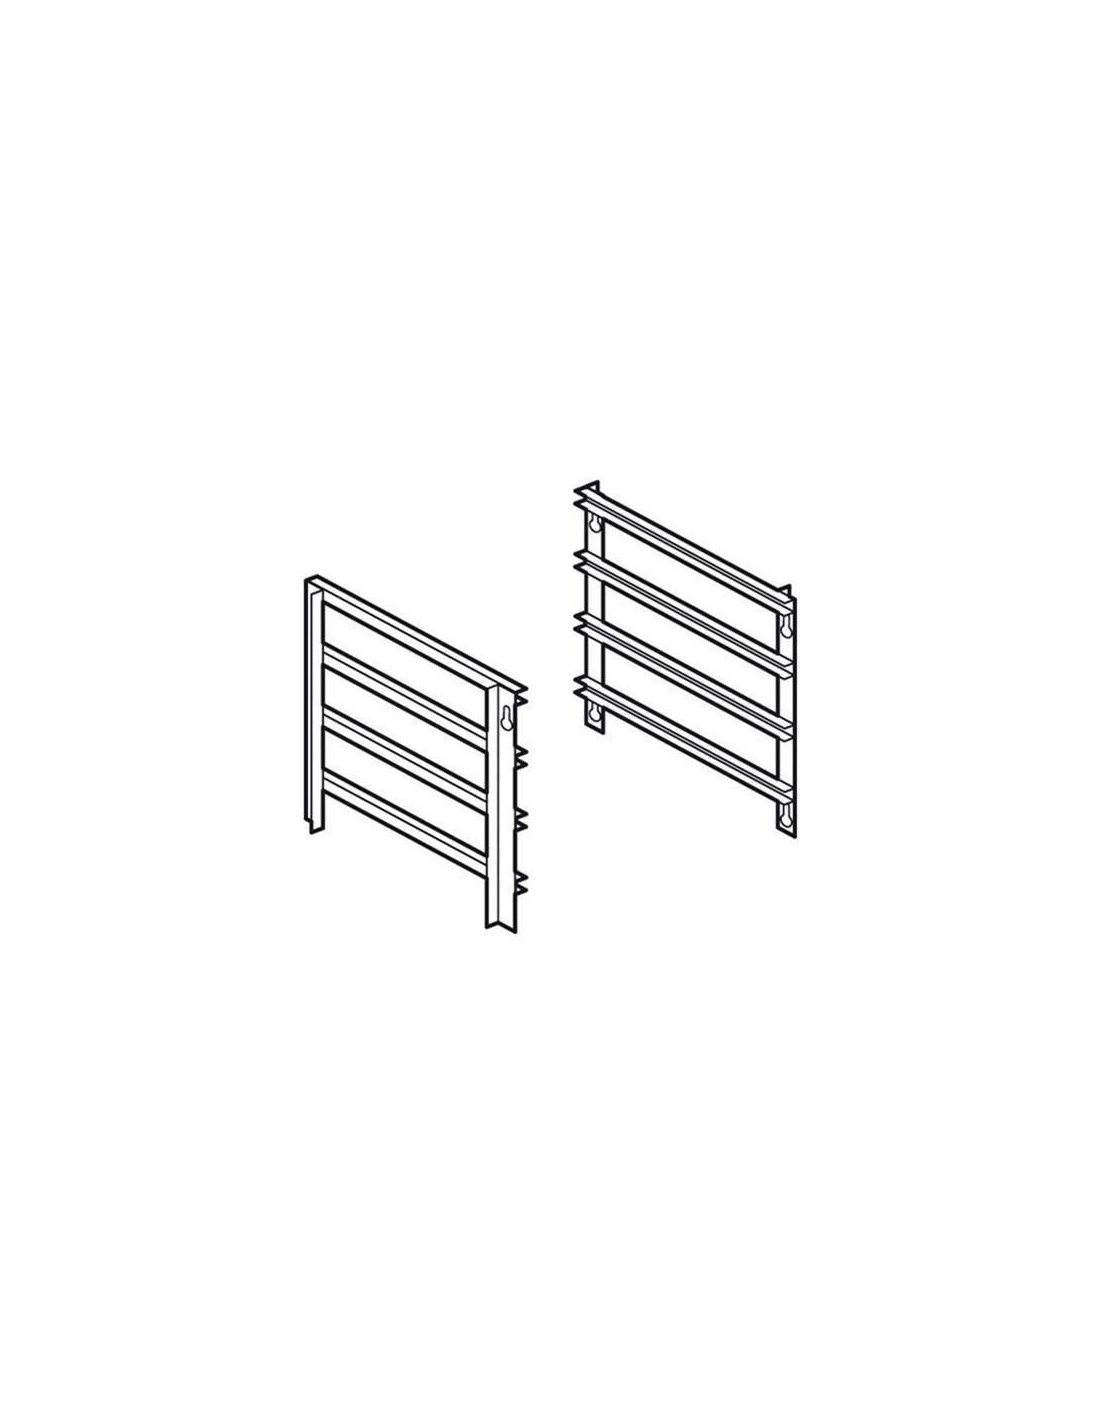 Puertas para compartimento y encimera - N. 4 plantas - Interasse cm 7